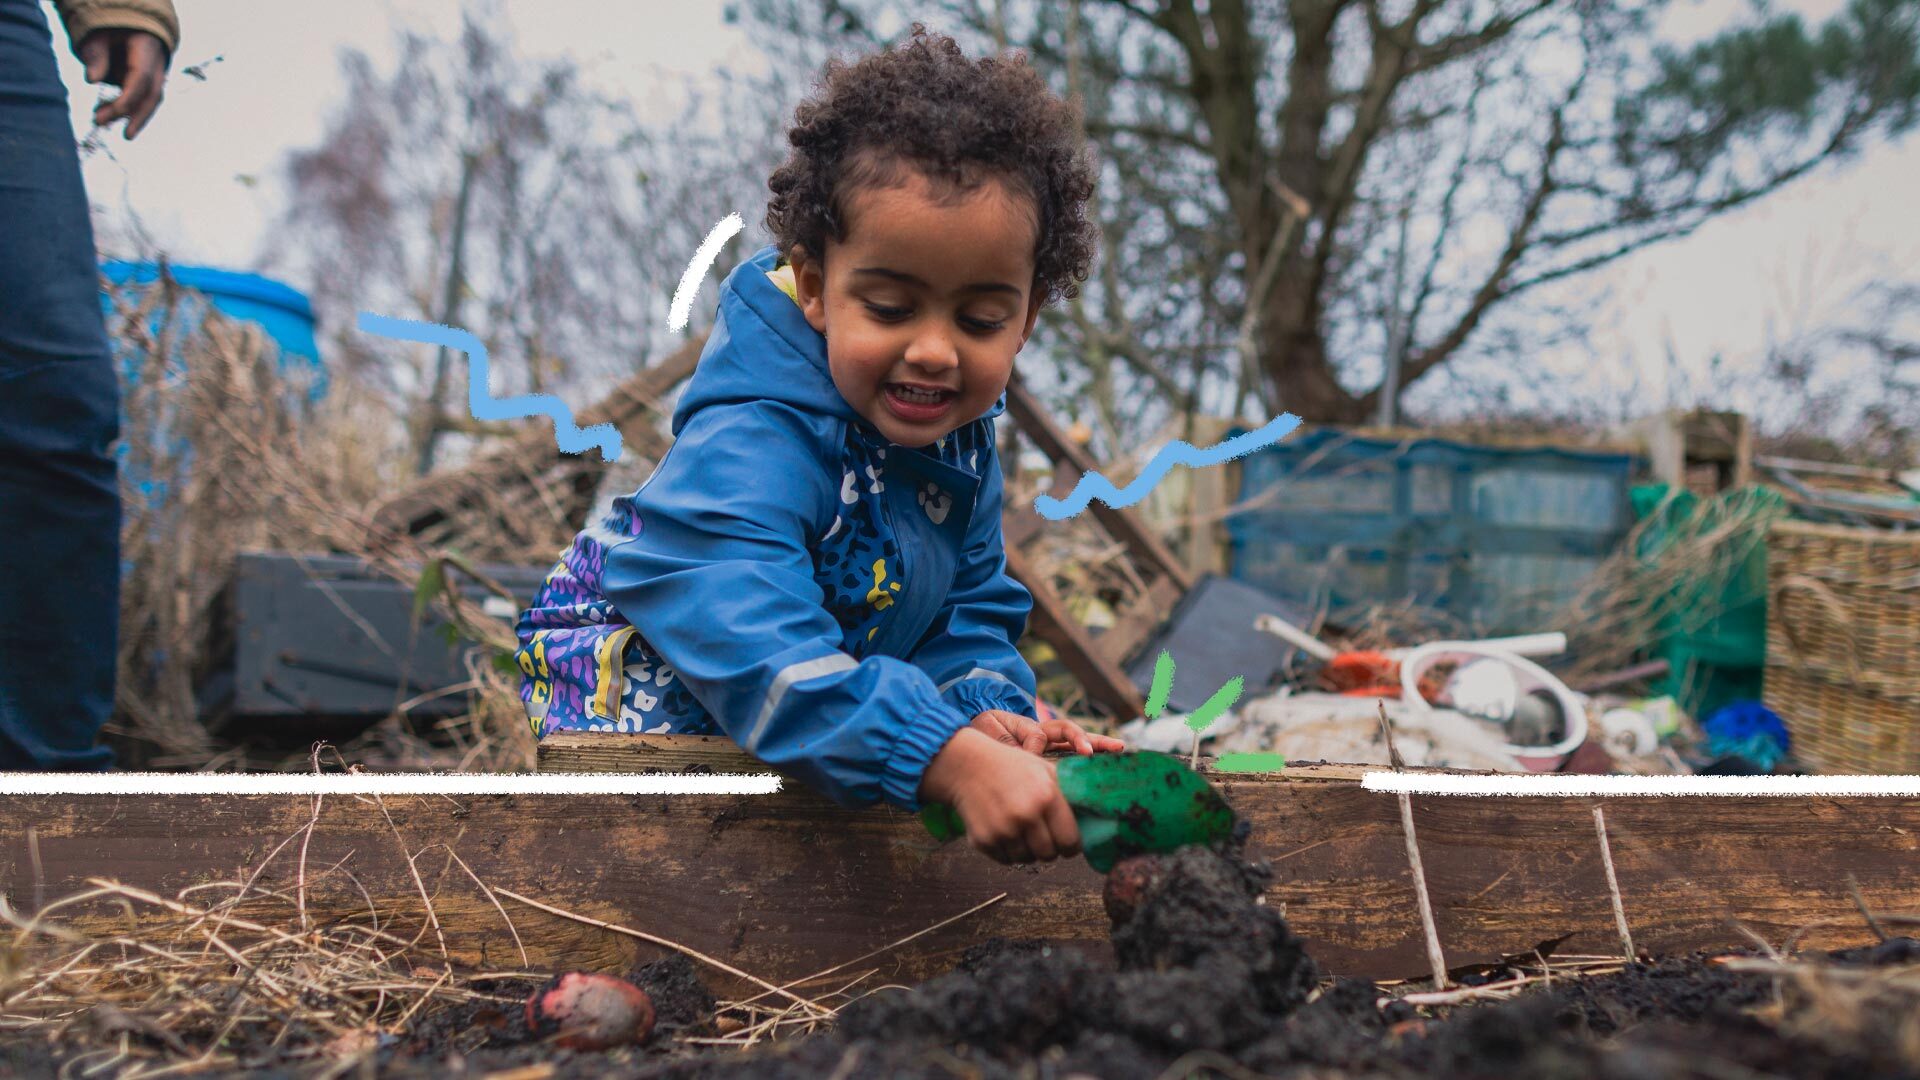 Agroflorestas: uma crianças de pele negra, usando jaqueta azul, está com uma muda de planta nas mãos e colocando na terra